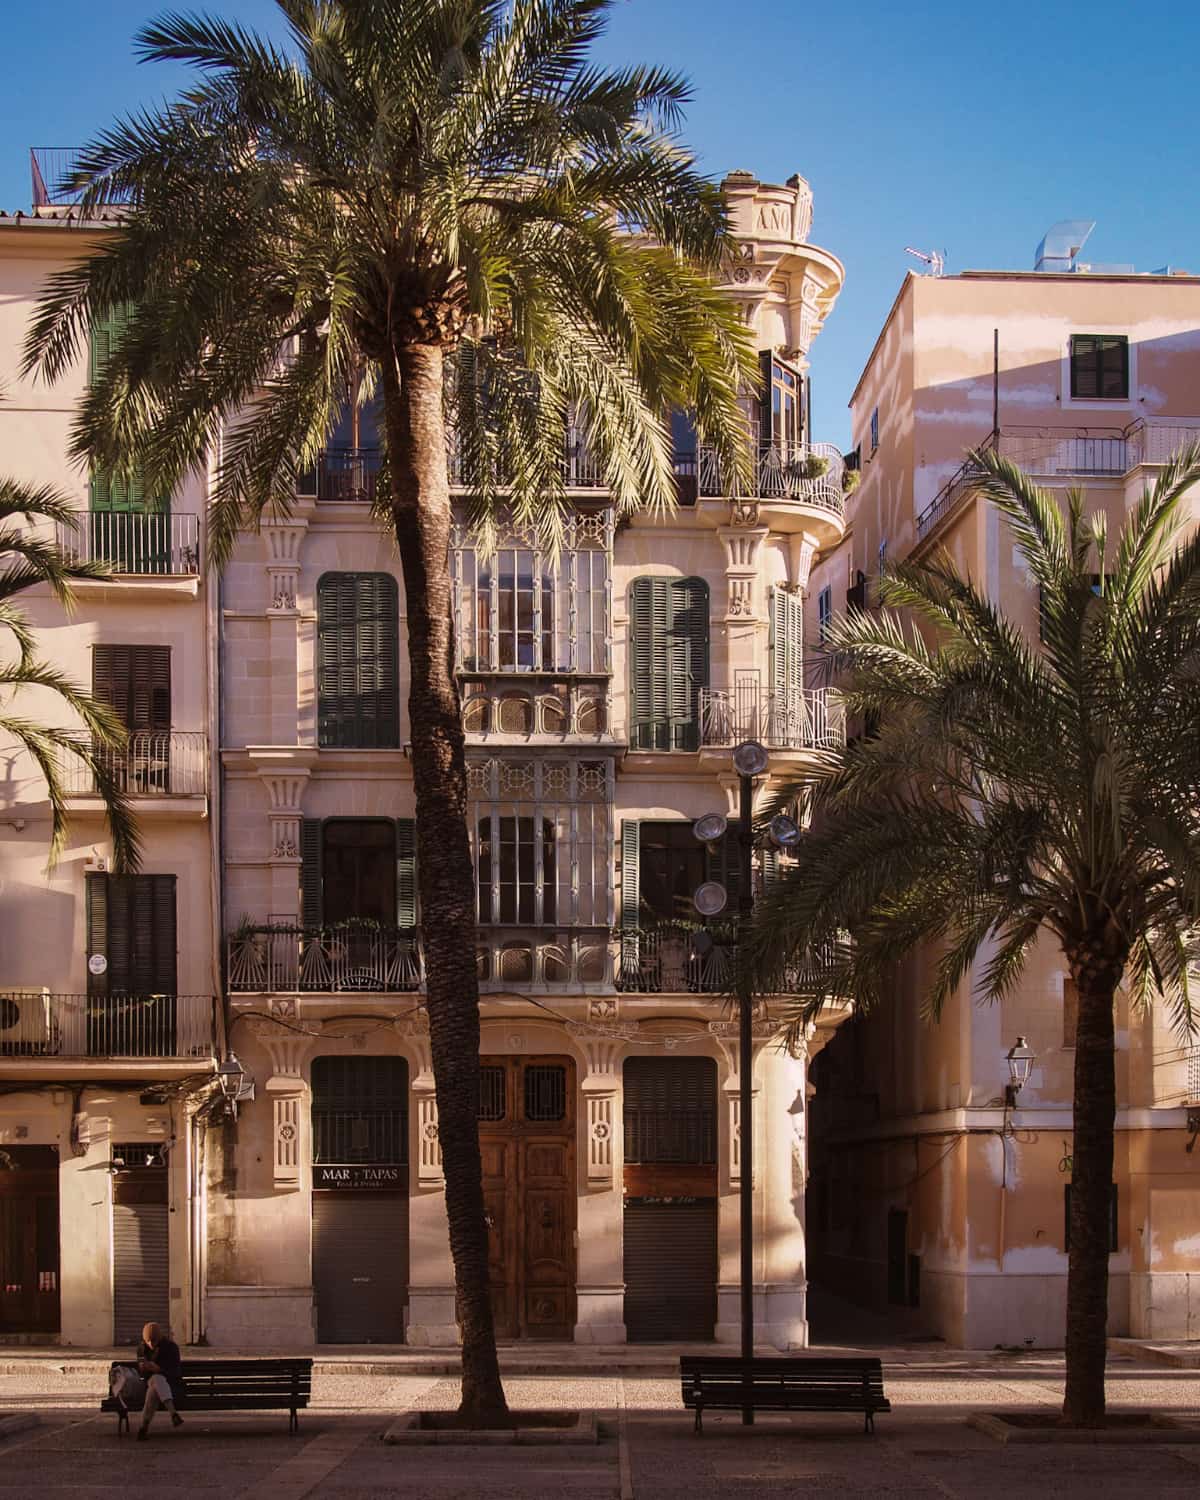 The facade of a building in Mallorca Spain